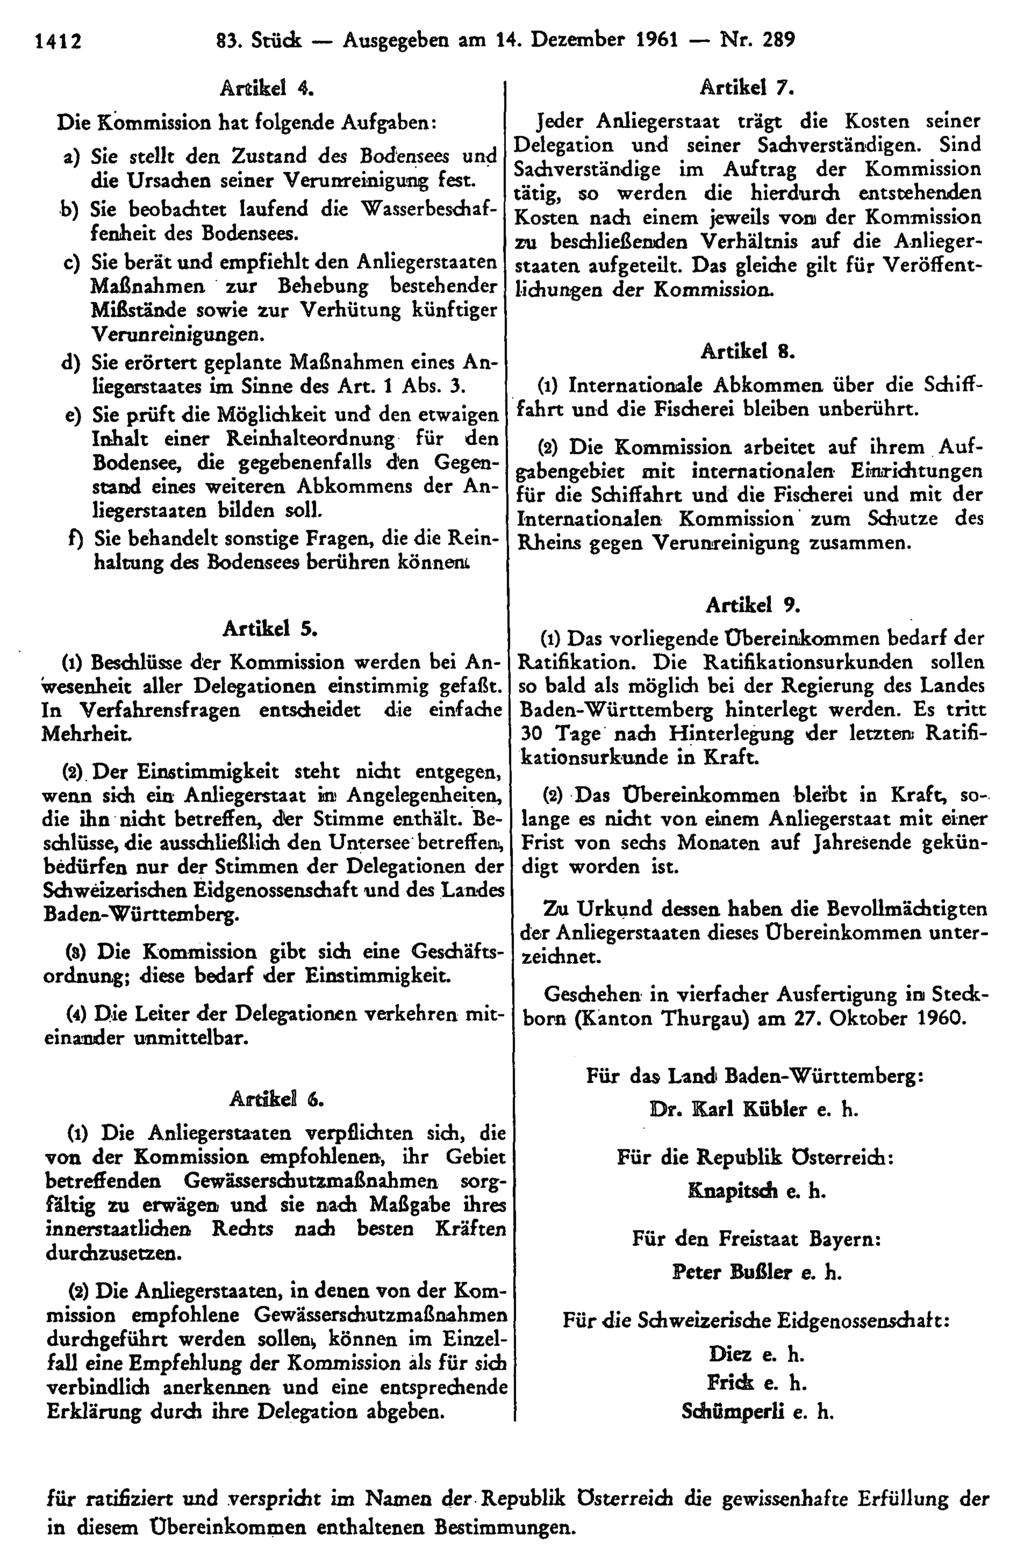 1412 83. Stück Ausgegeben am 14. Dezember 1961 Nr. 289 Artikel 4. Die Kommission hat folgende Aufgaben: a) Sie stellt den Zustand des Bodensees und die Ursachen seiner Verunreinigung fest.